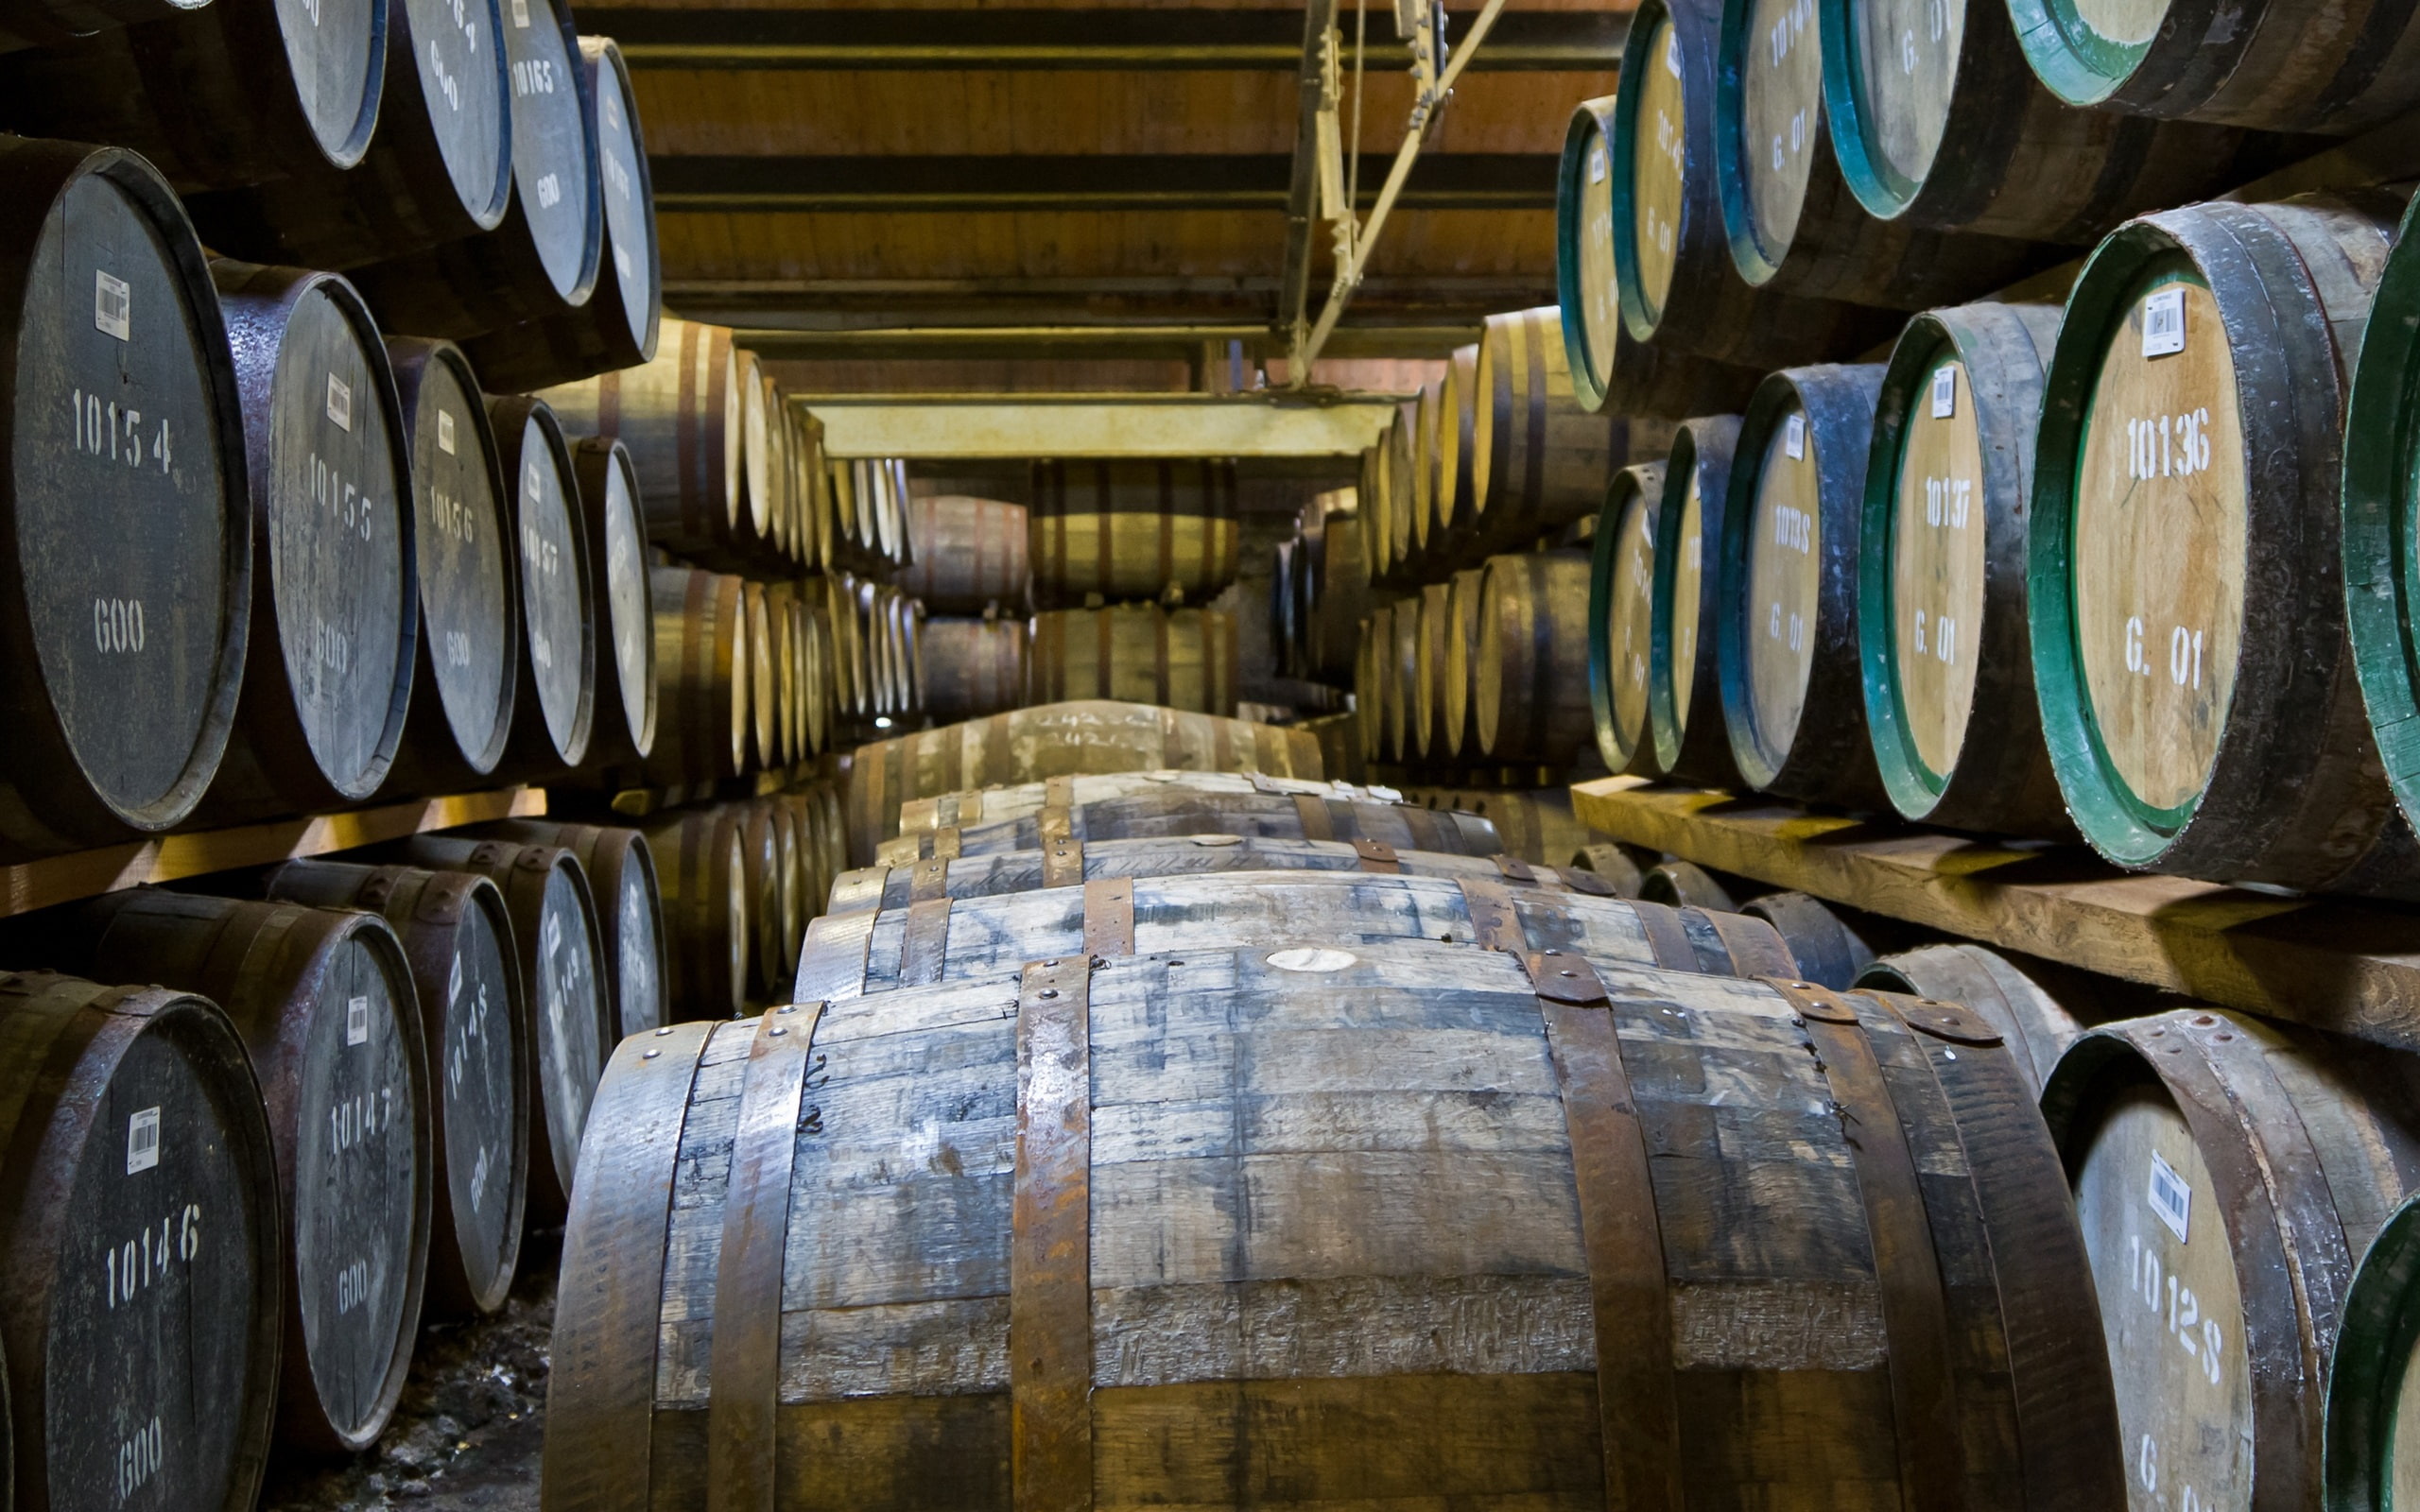 Winery, wood barrels